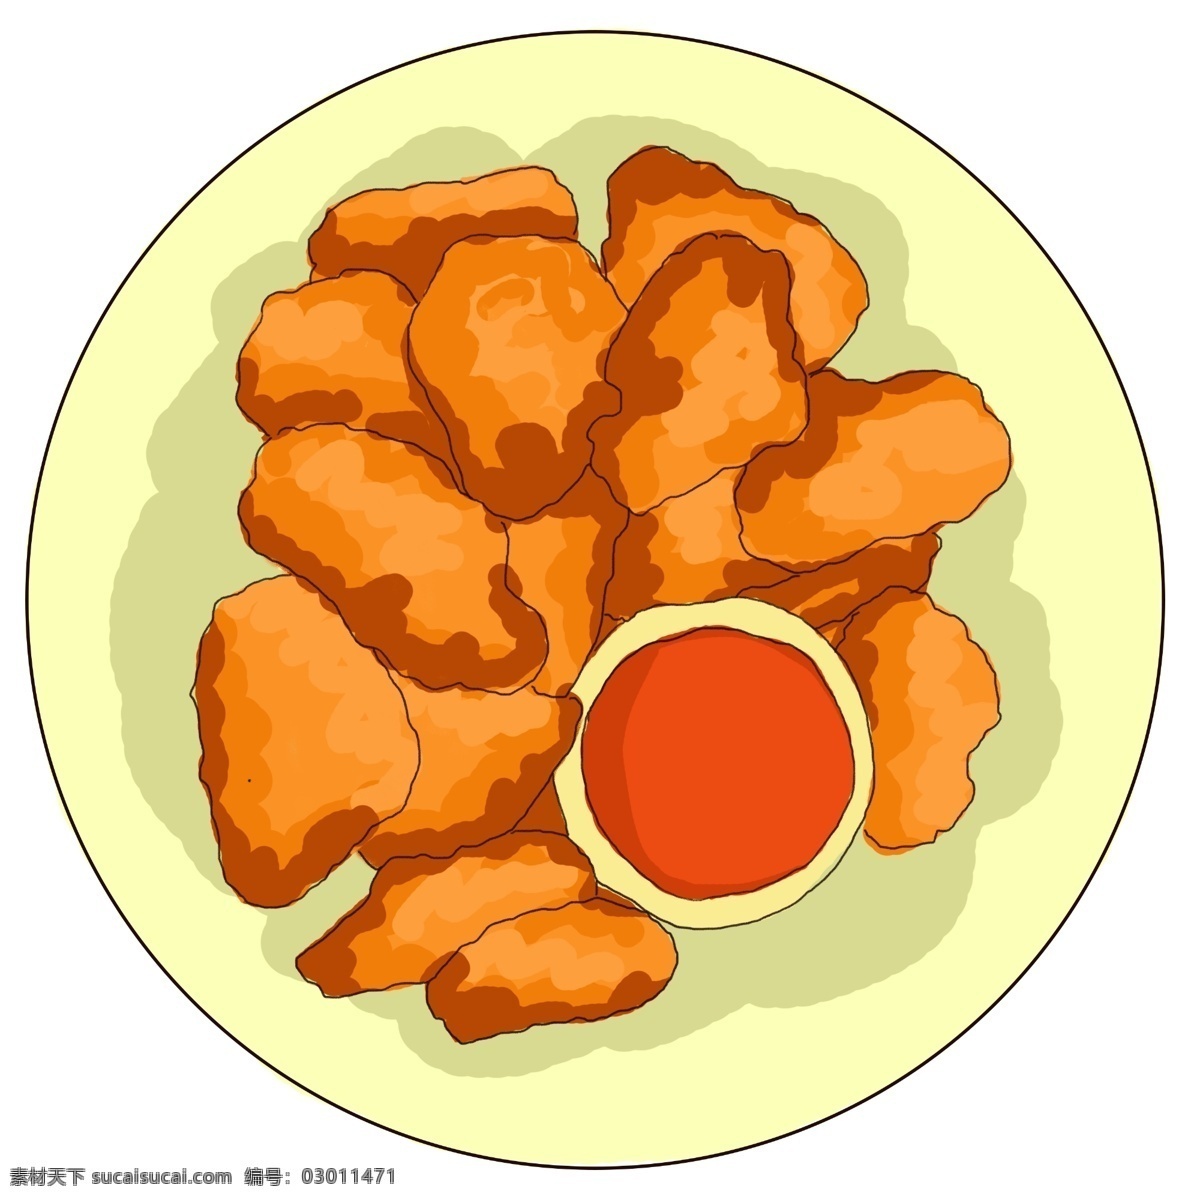 插画 手绘 炸鸡块 图 鸡肉 零食 炸鸡 鸡腿 灰色 长方形 盘子 黄色 油炸食品 食物 金黄色 荤菜 用于 肯德基 麦当劳 宣传